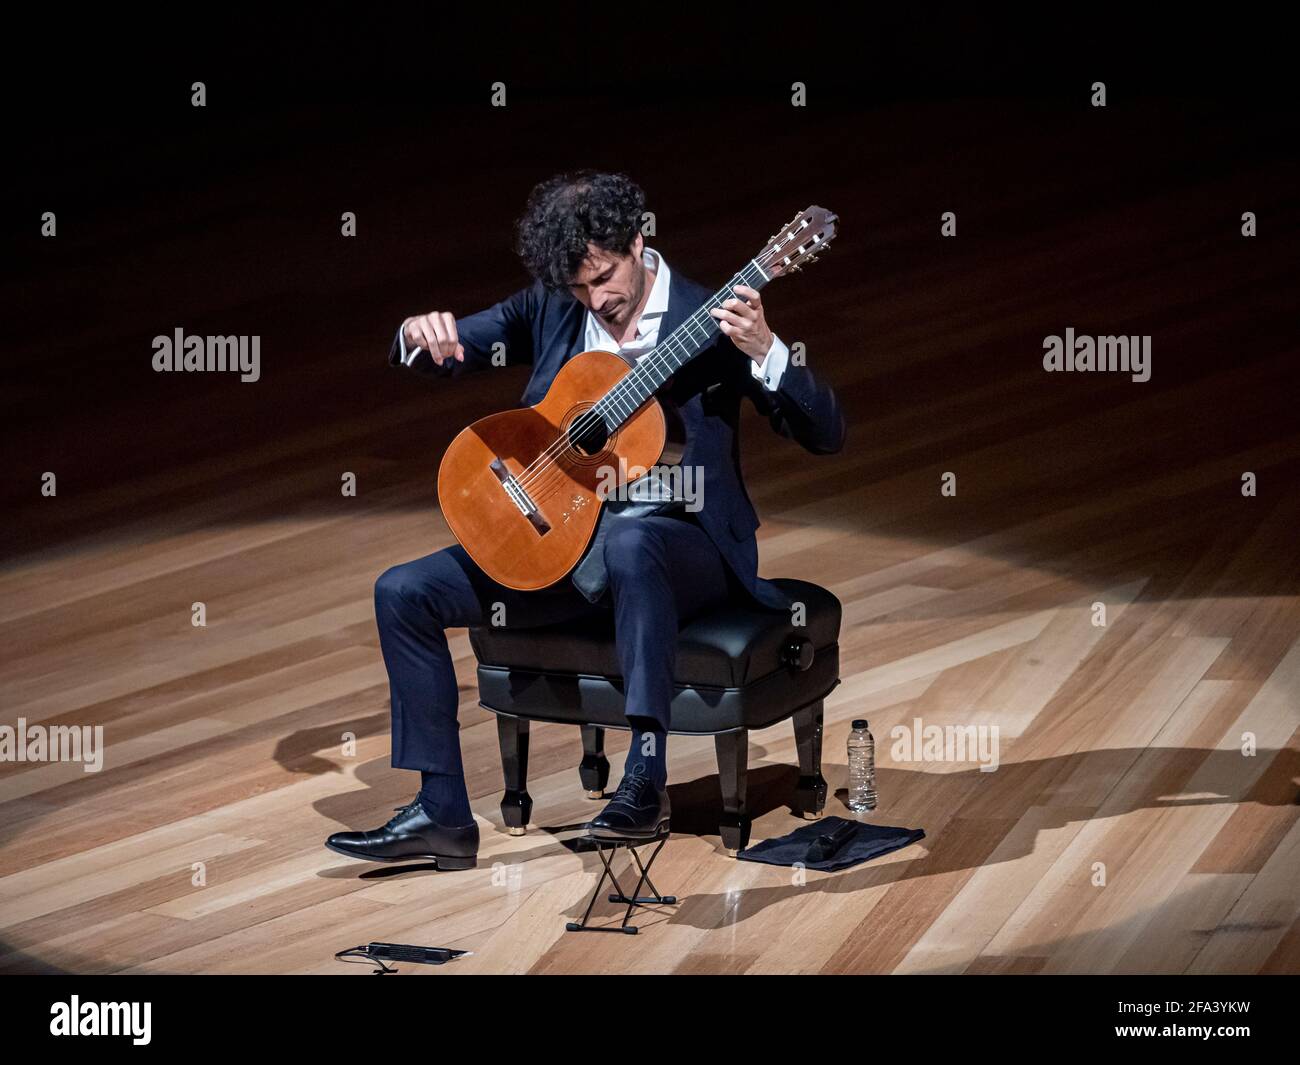 Saragosse, Espagne. 22 avril 2021. Le guitariste Pablo Sainz Villegas s'est produit à l'Auditorium de Saragosse. L'artiste est une référence internationale, triomphant dans le monde entier. Juan Antonio Perez/Alamy Live News Banque D'Images